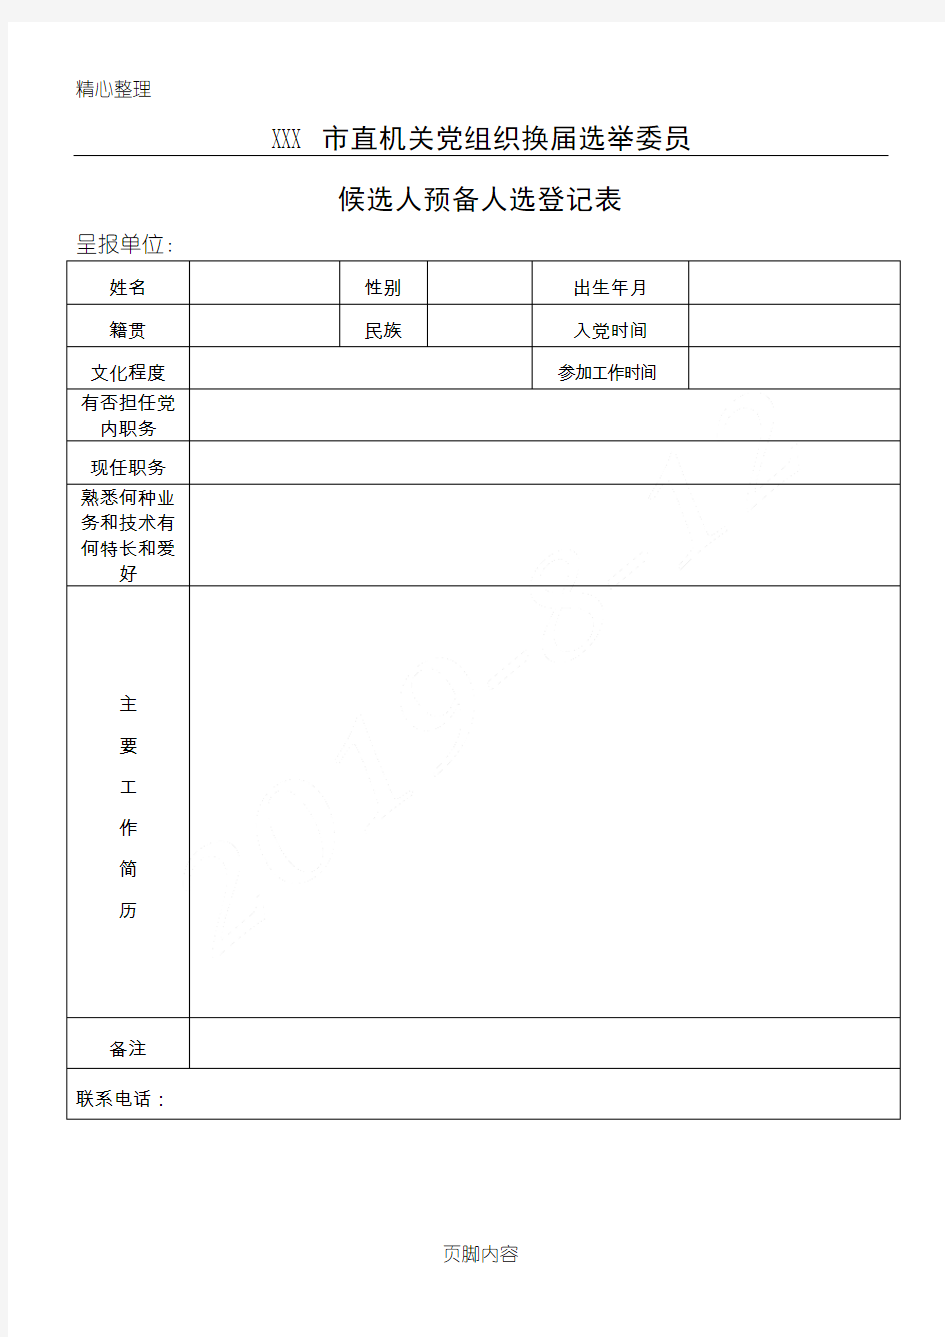 机关党组织换届选举委员候选人预备人选登记表格模板